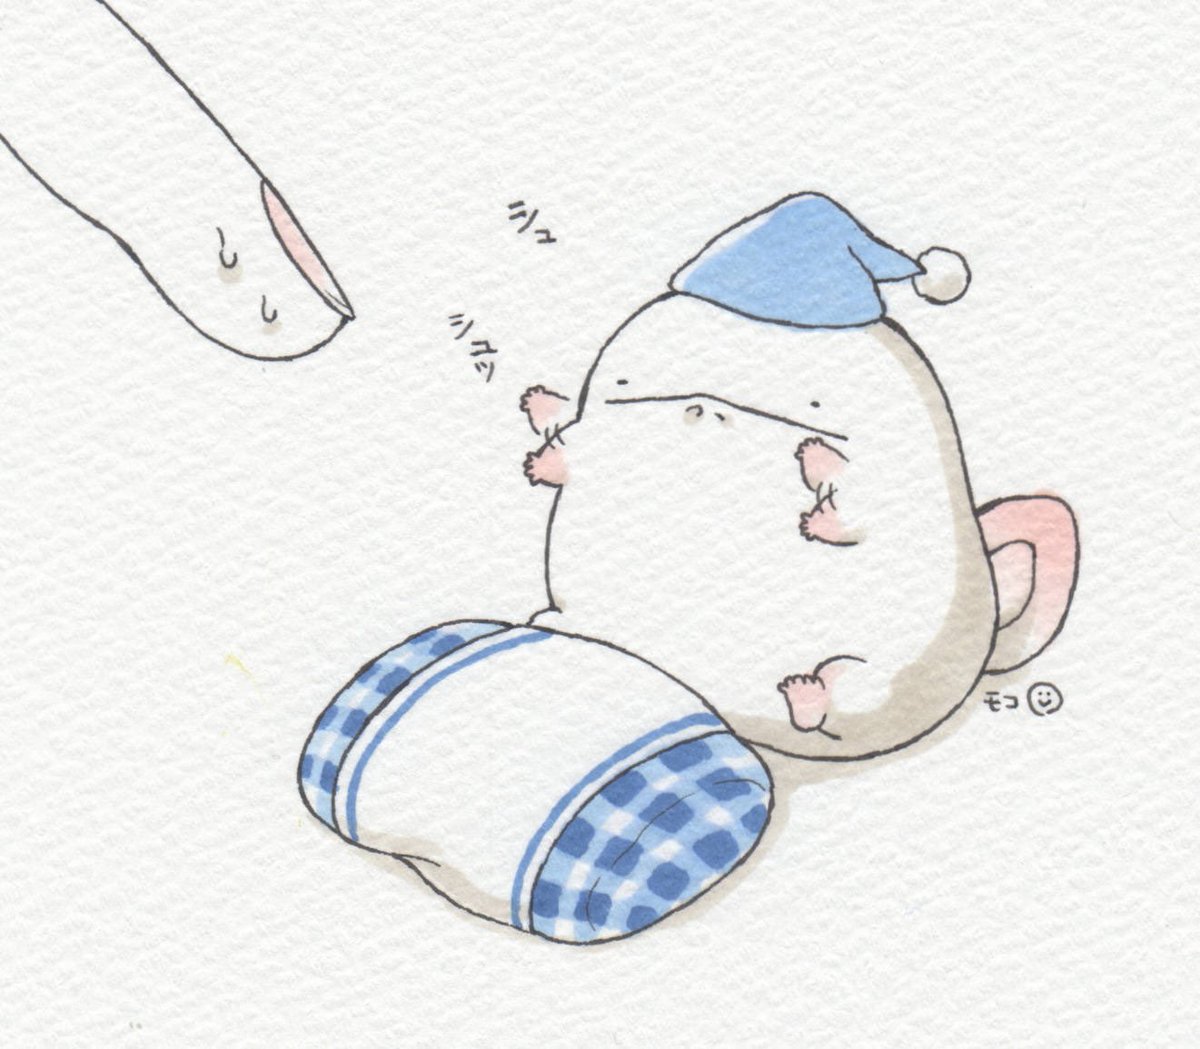 「オオサンショウウオ、枕投げイメトレ。 」|モコ@うおマロ漫画更新中です！のイラスト